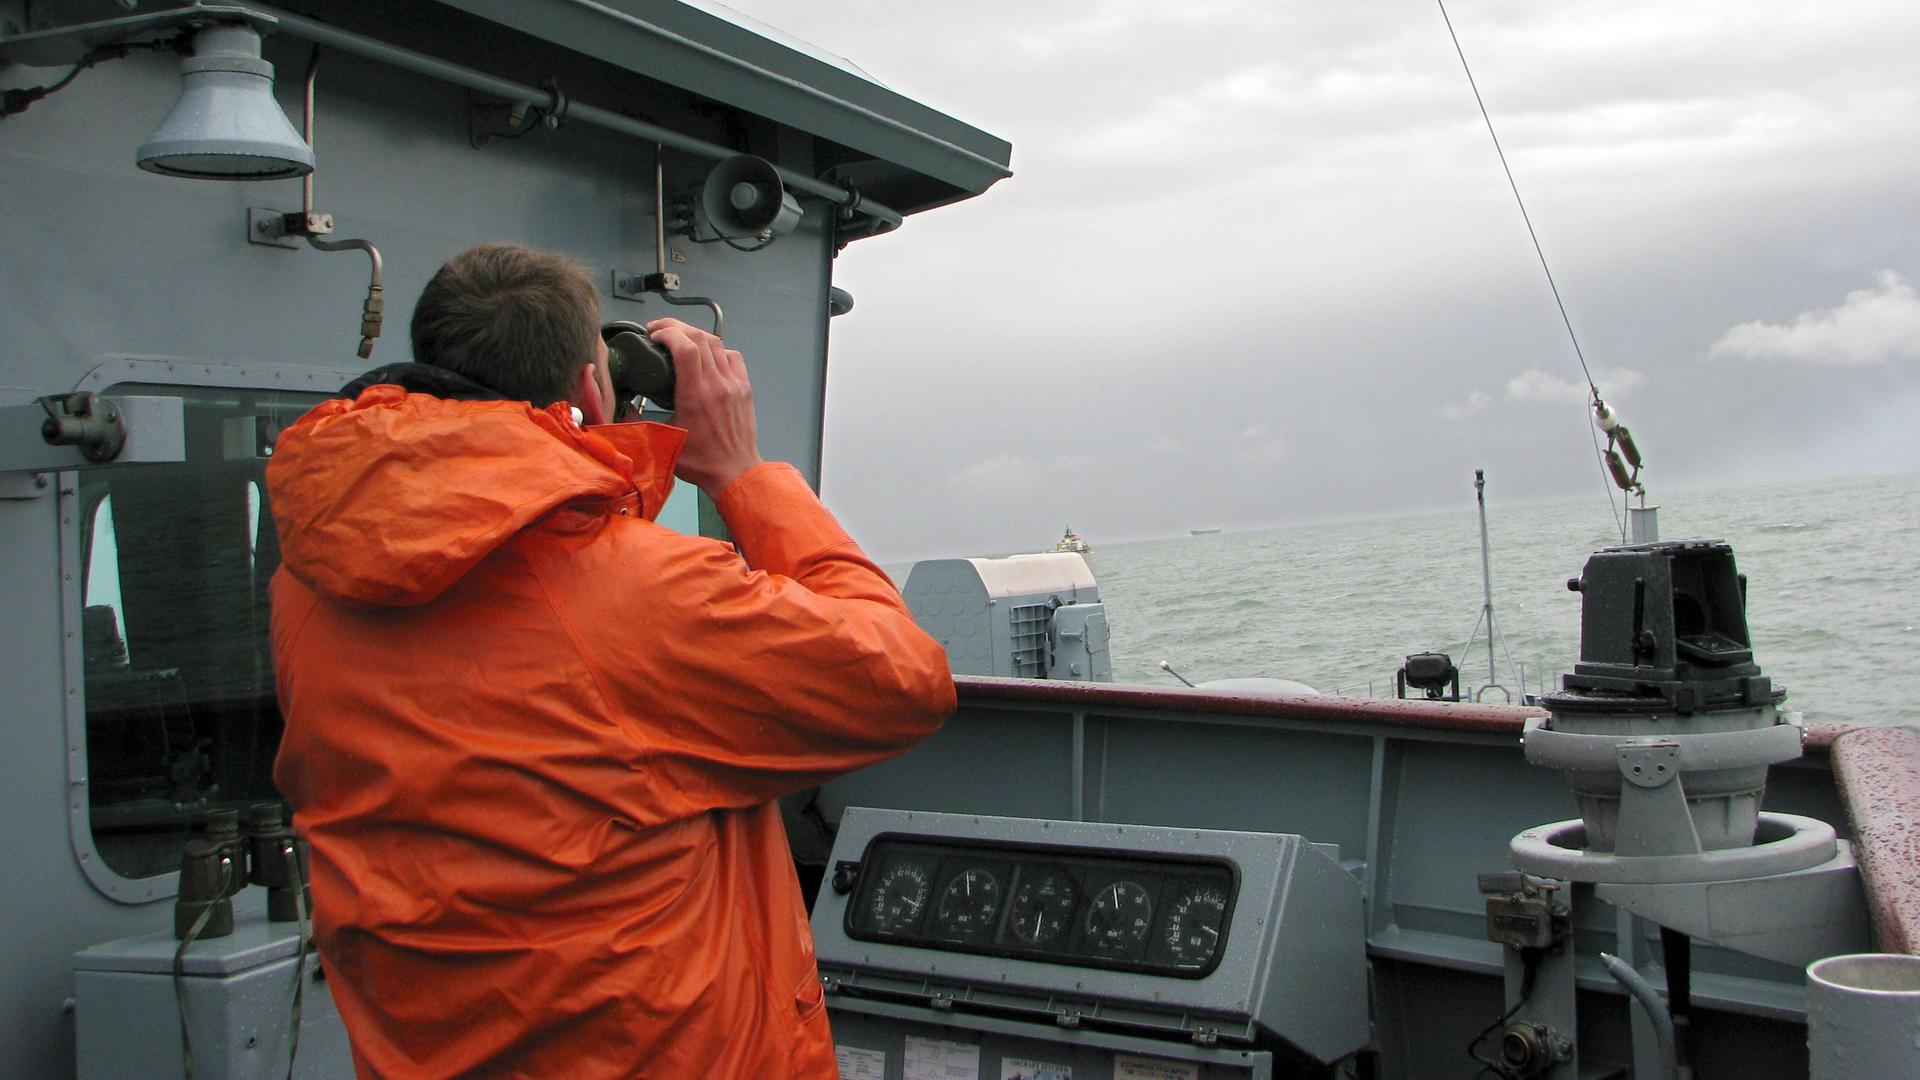 Ein Marinesoldat in Regenjacke steht als Ausguck auf einem Schiff und betrachtet das Meer durch ein Fernglas.